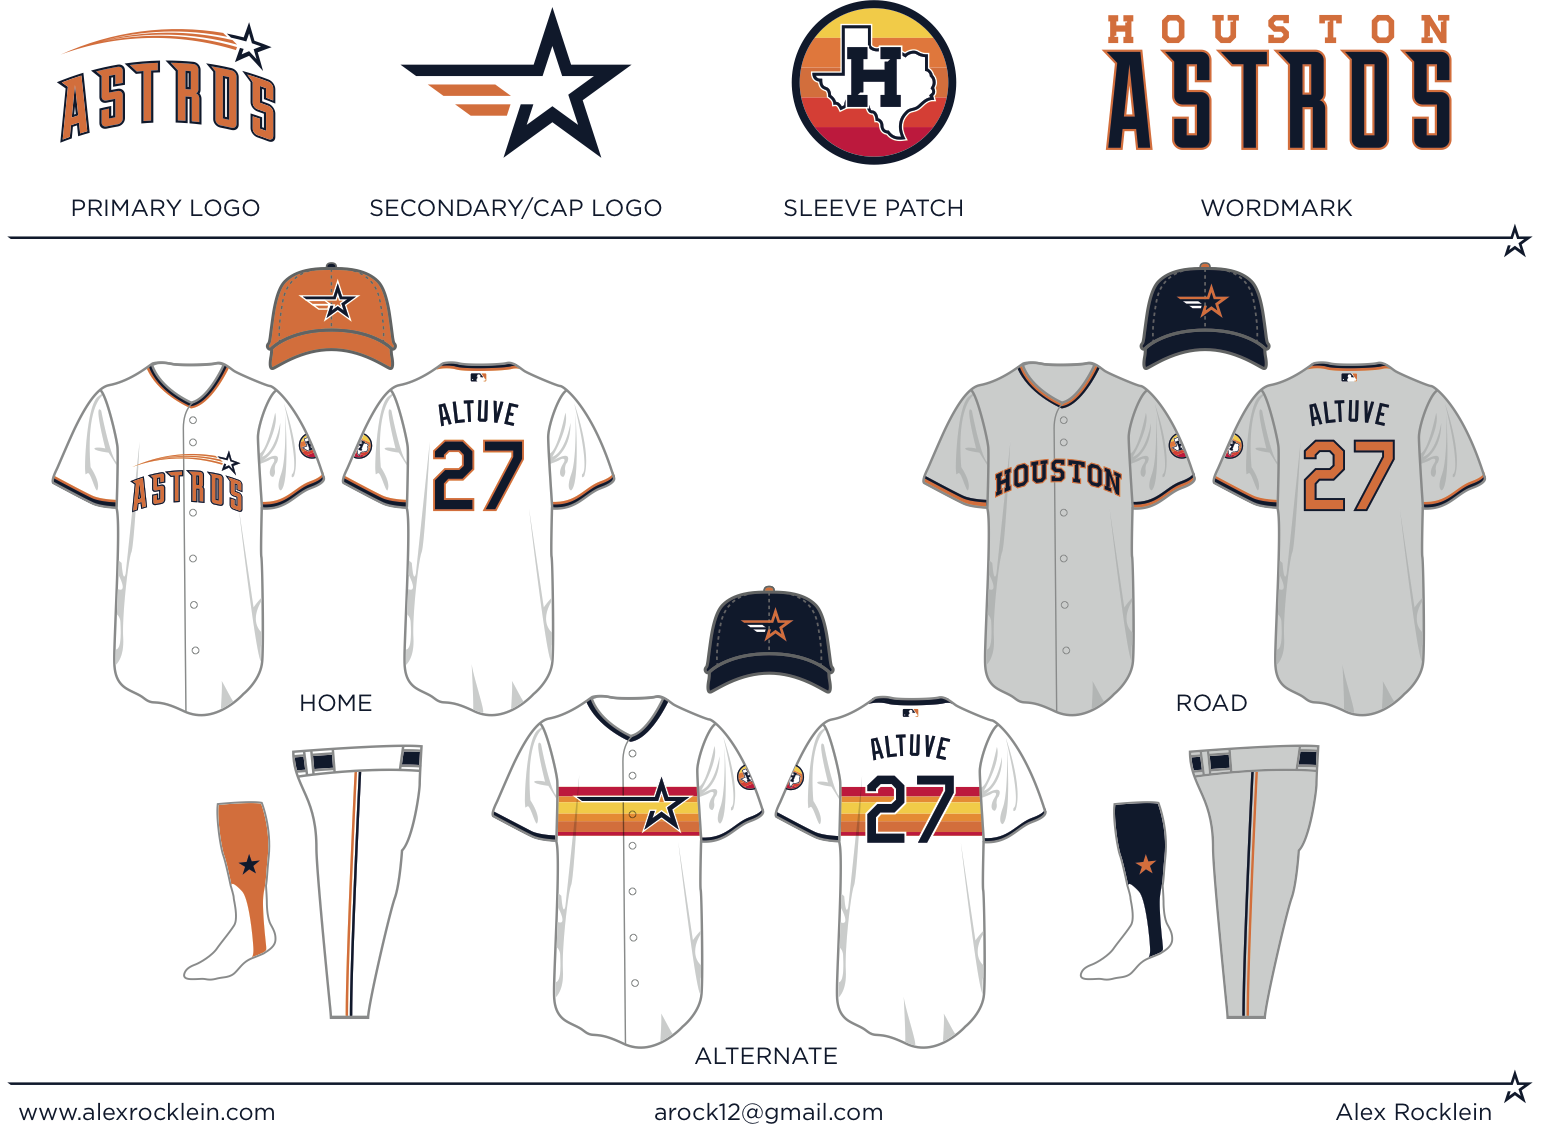 astros home uniforms